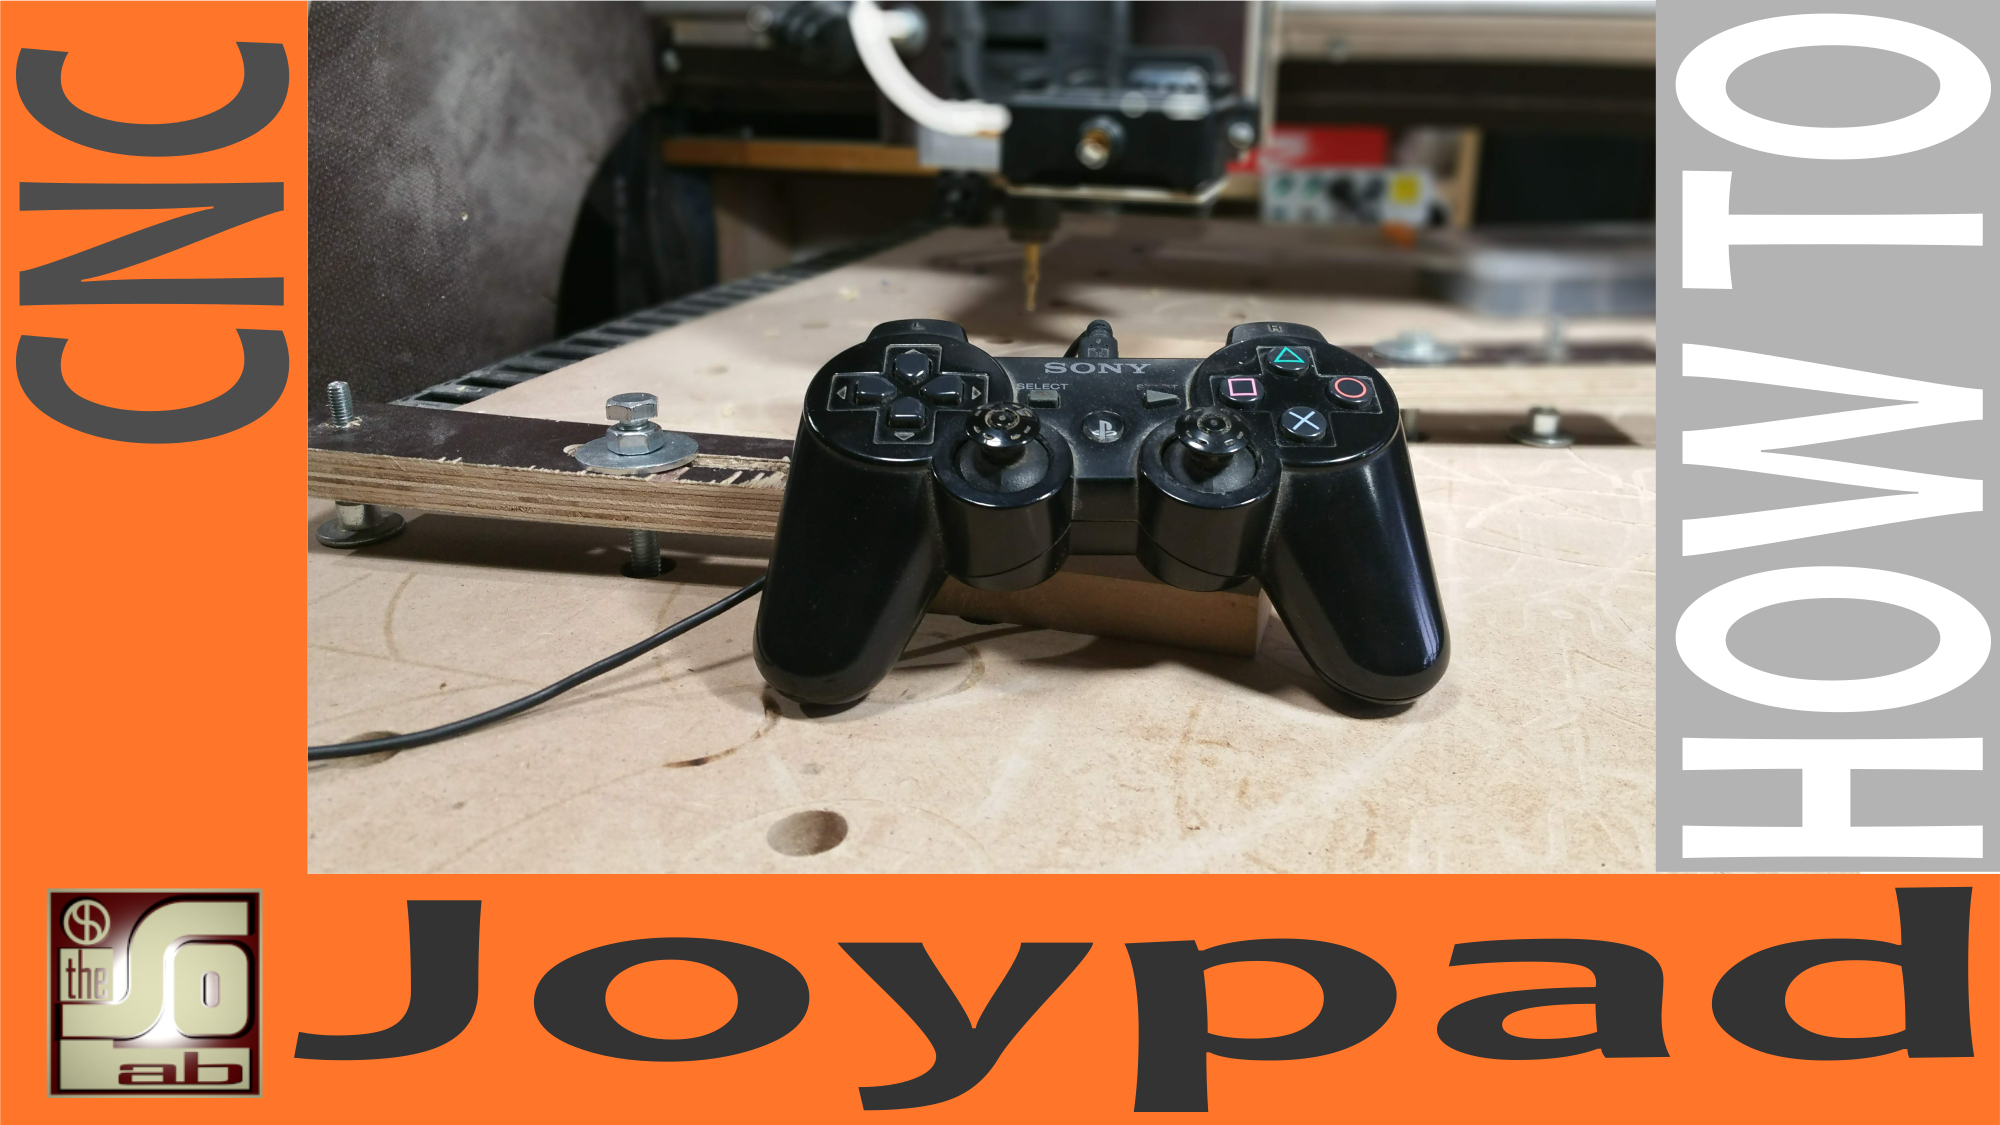 CNC - Come controllare la CNC con un Joypad riciclato O TABLET